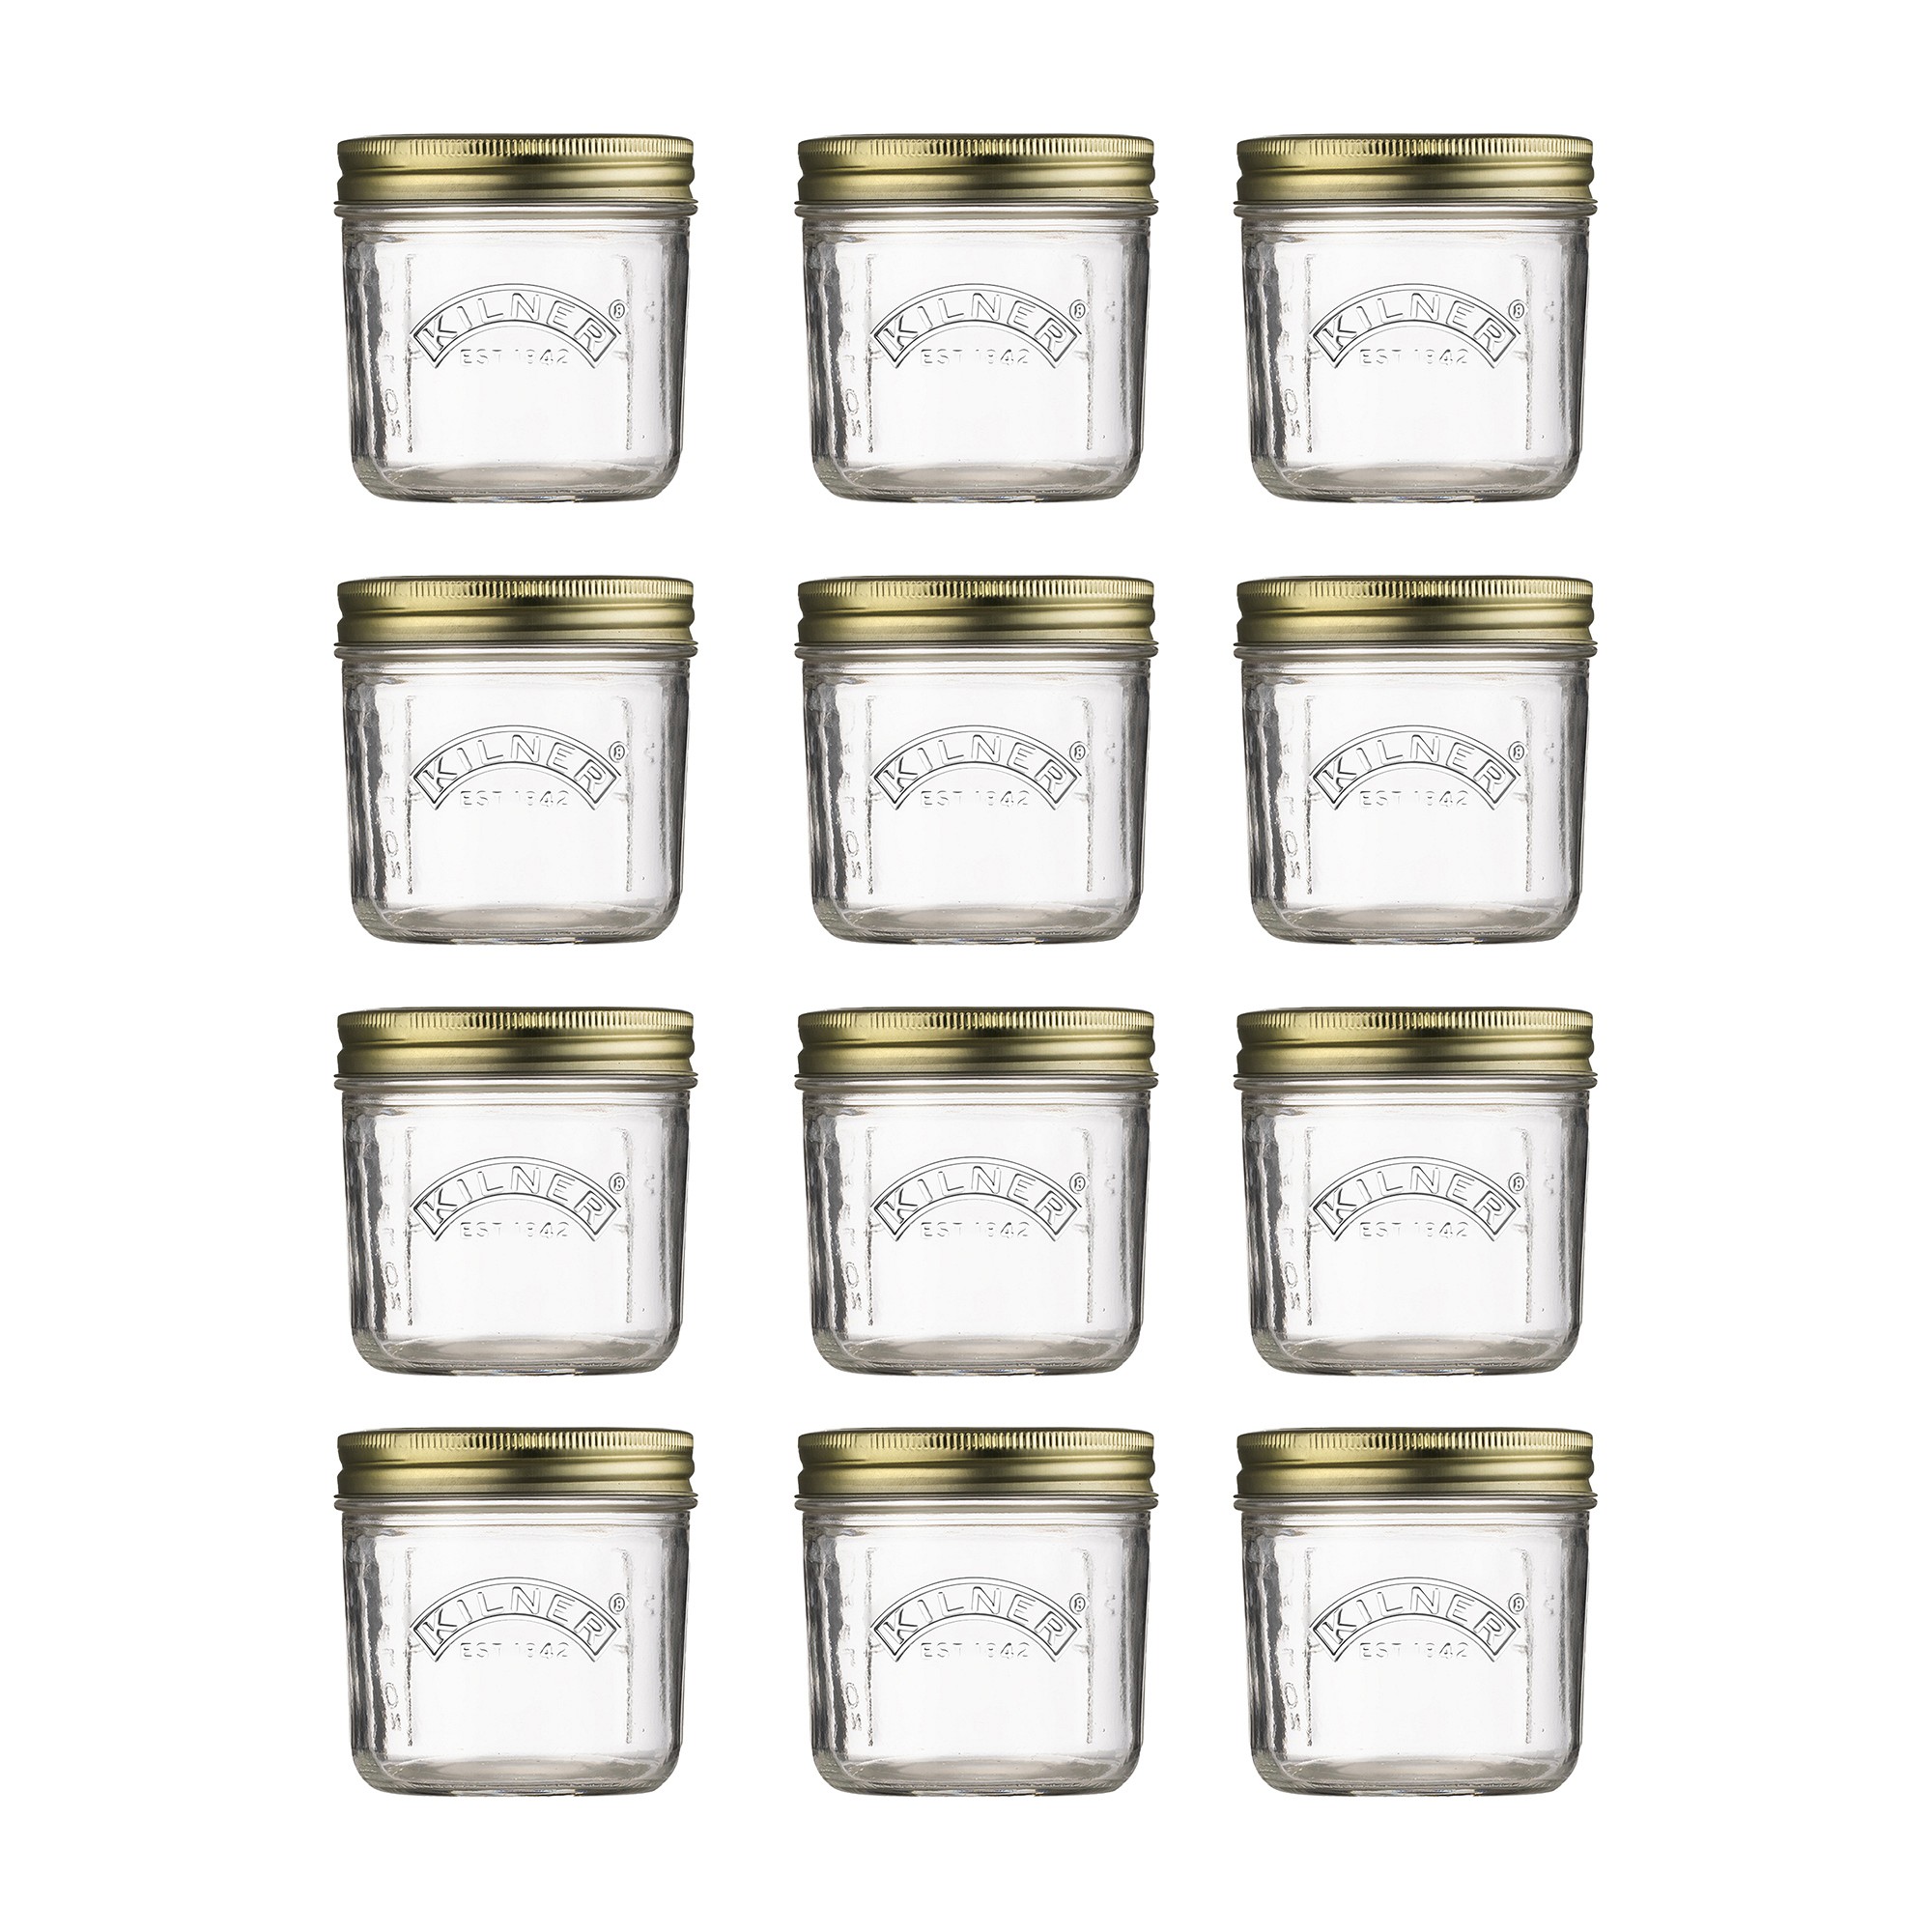 Kilner Wide Mouth Canning Jar, 7oz, Set of 12